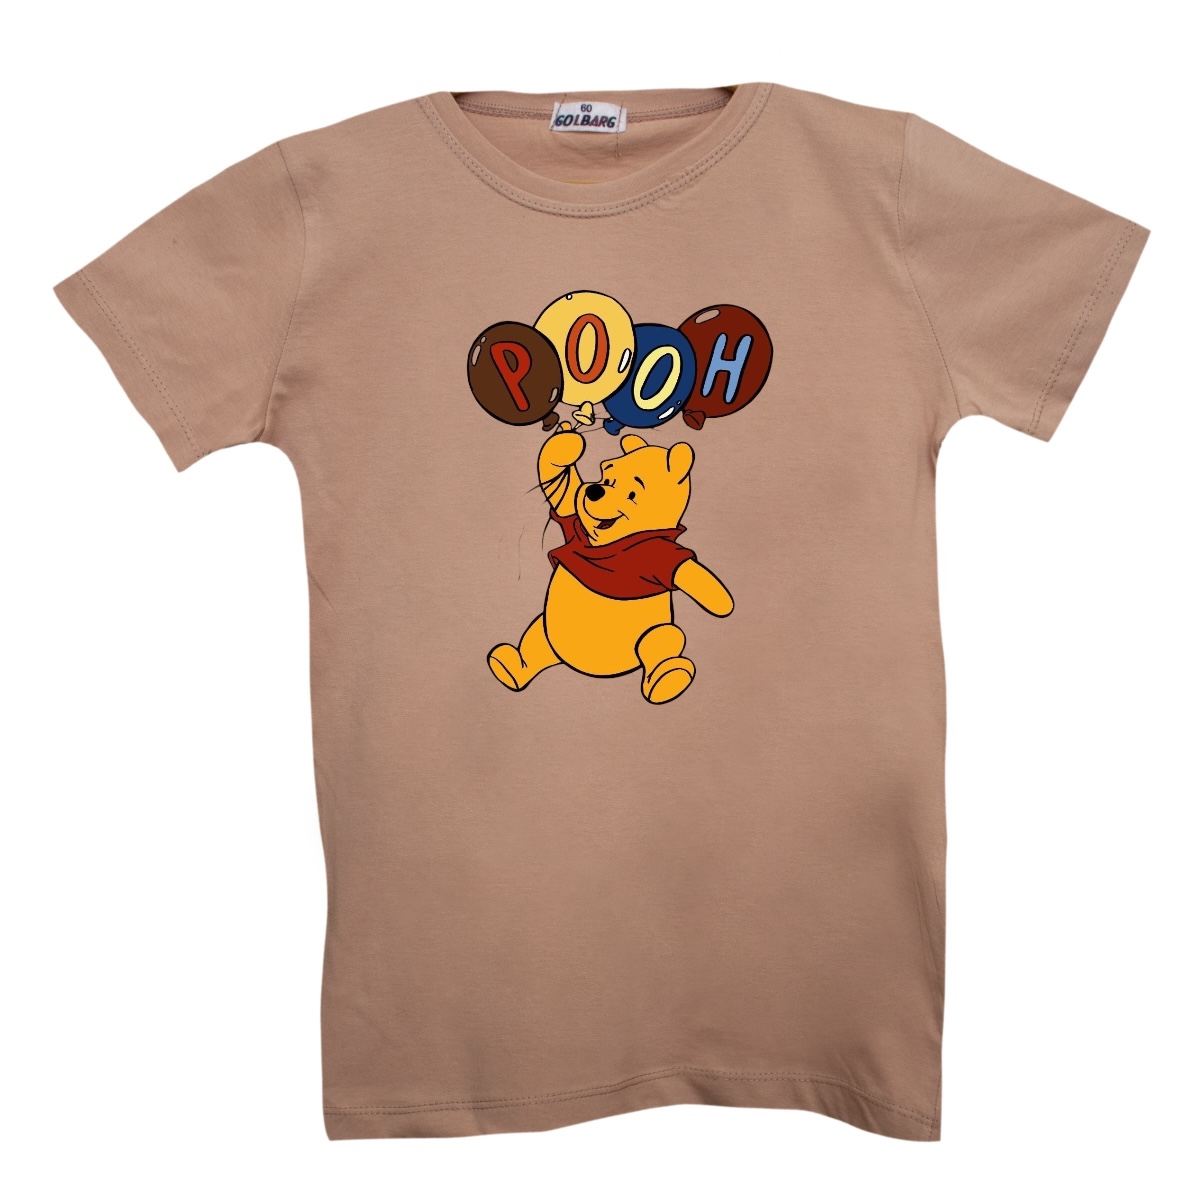 تی شرت بچگانه مدل پو کد 16